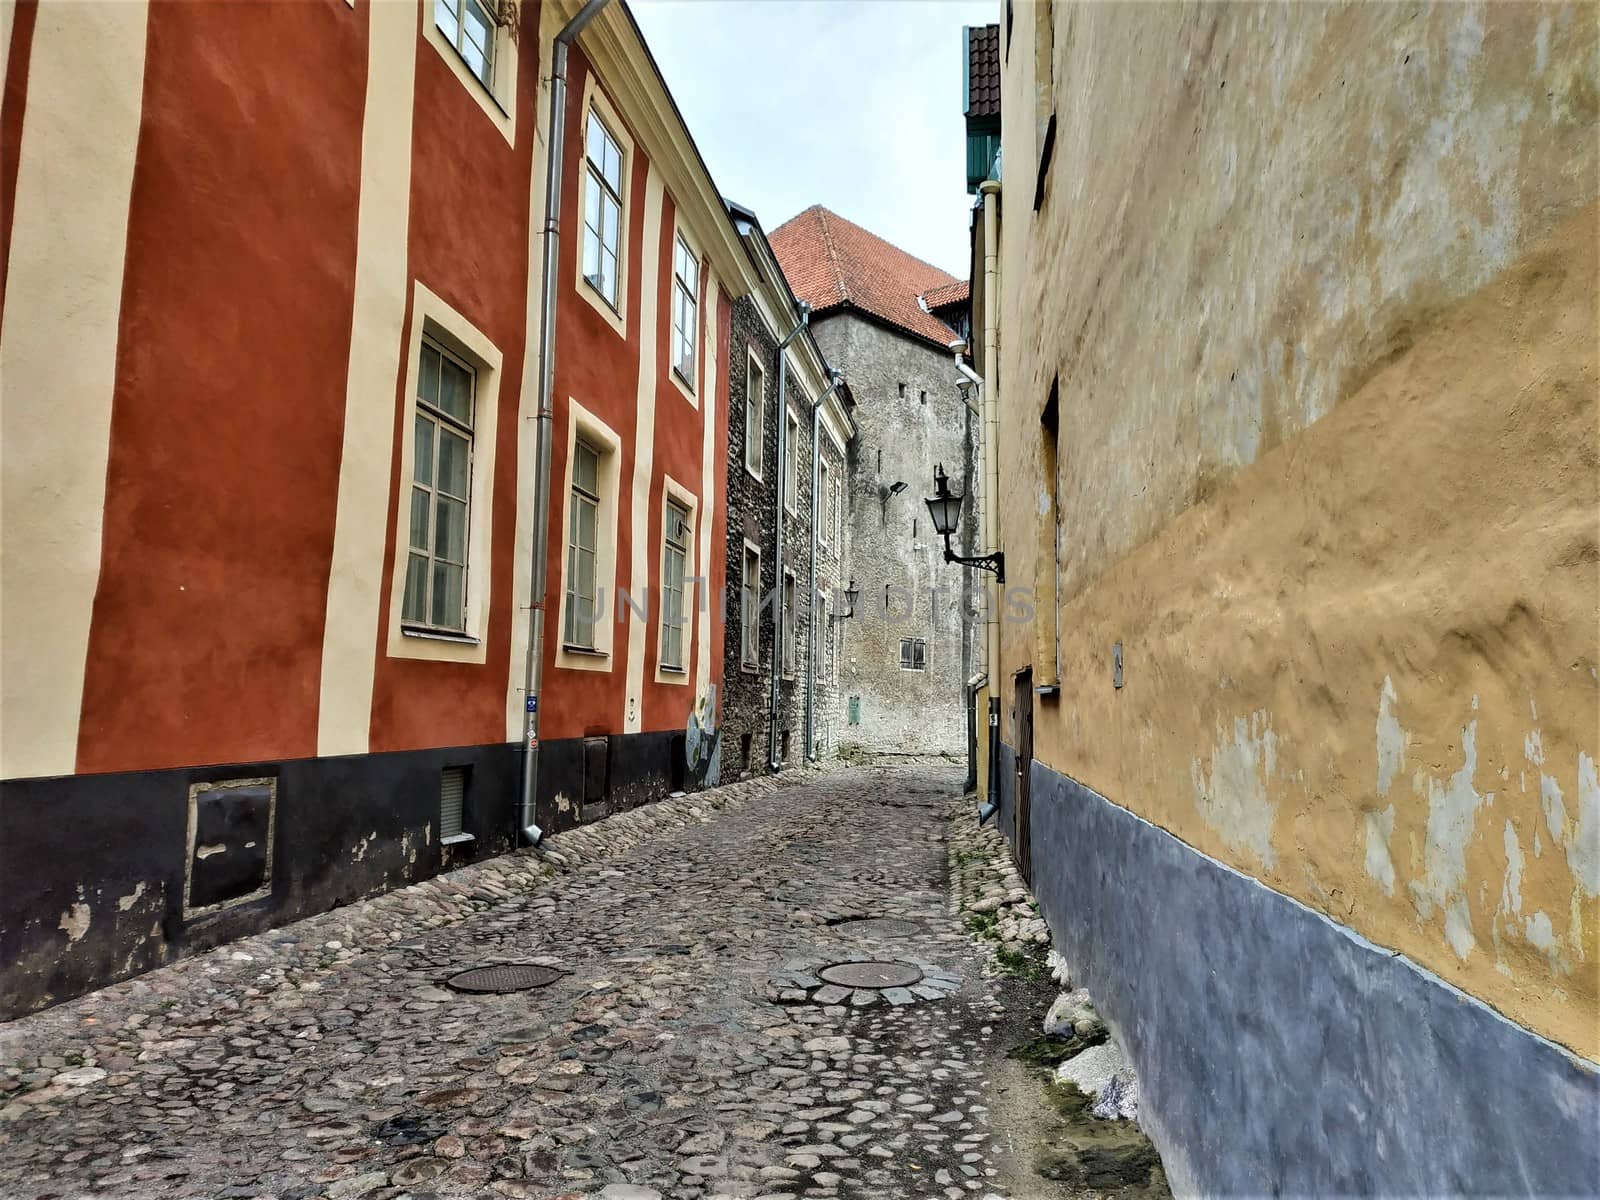 Beautiful old street in the city center of Tallinn, Estonia